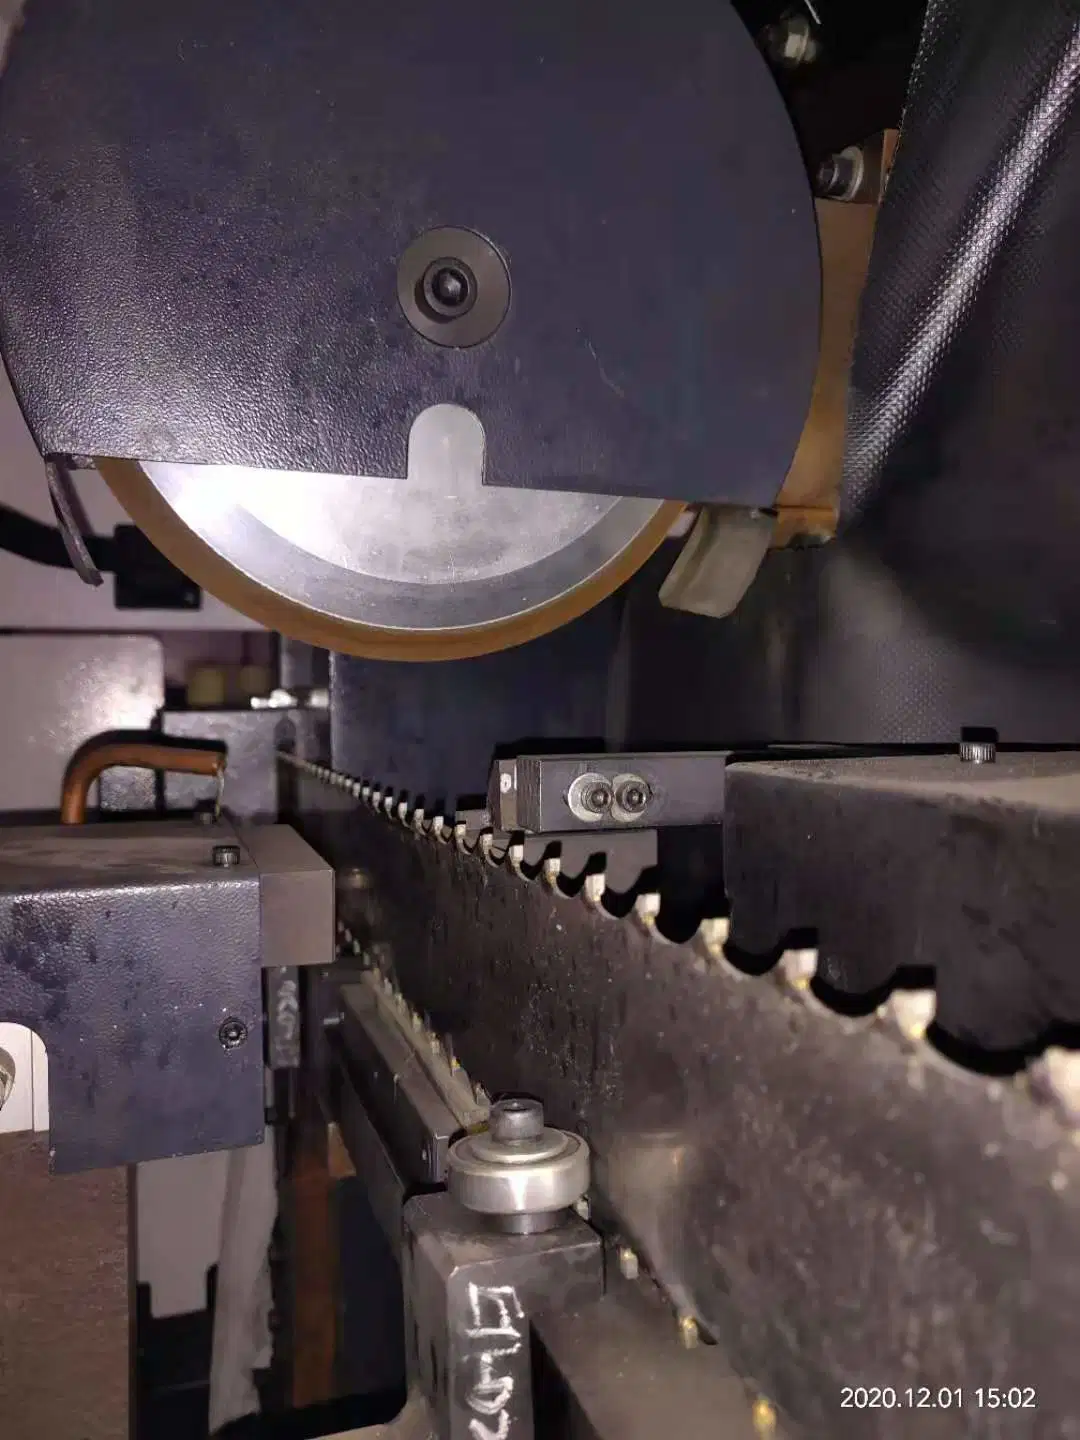 Hoja de sierra de cinta para corte de madera de máquina de moler afilado de la hoja de sierra